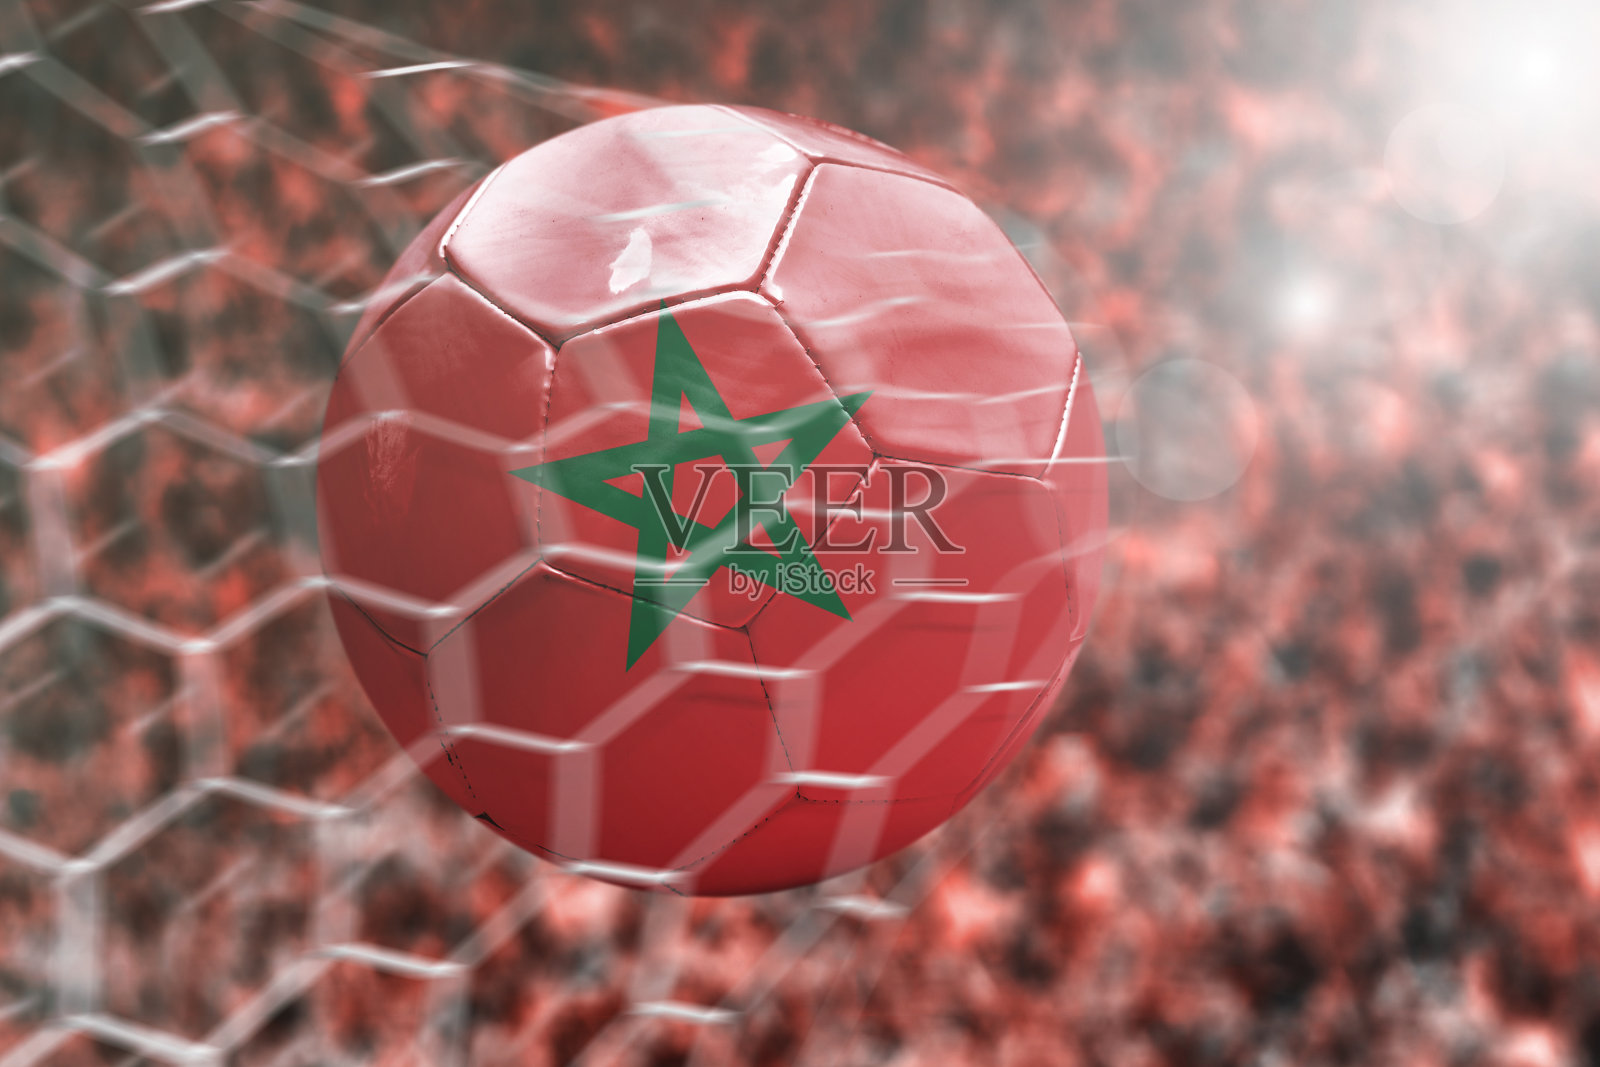 摩洛哥足球:进球照片摄影图片